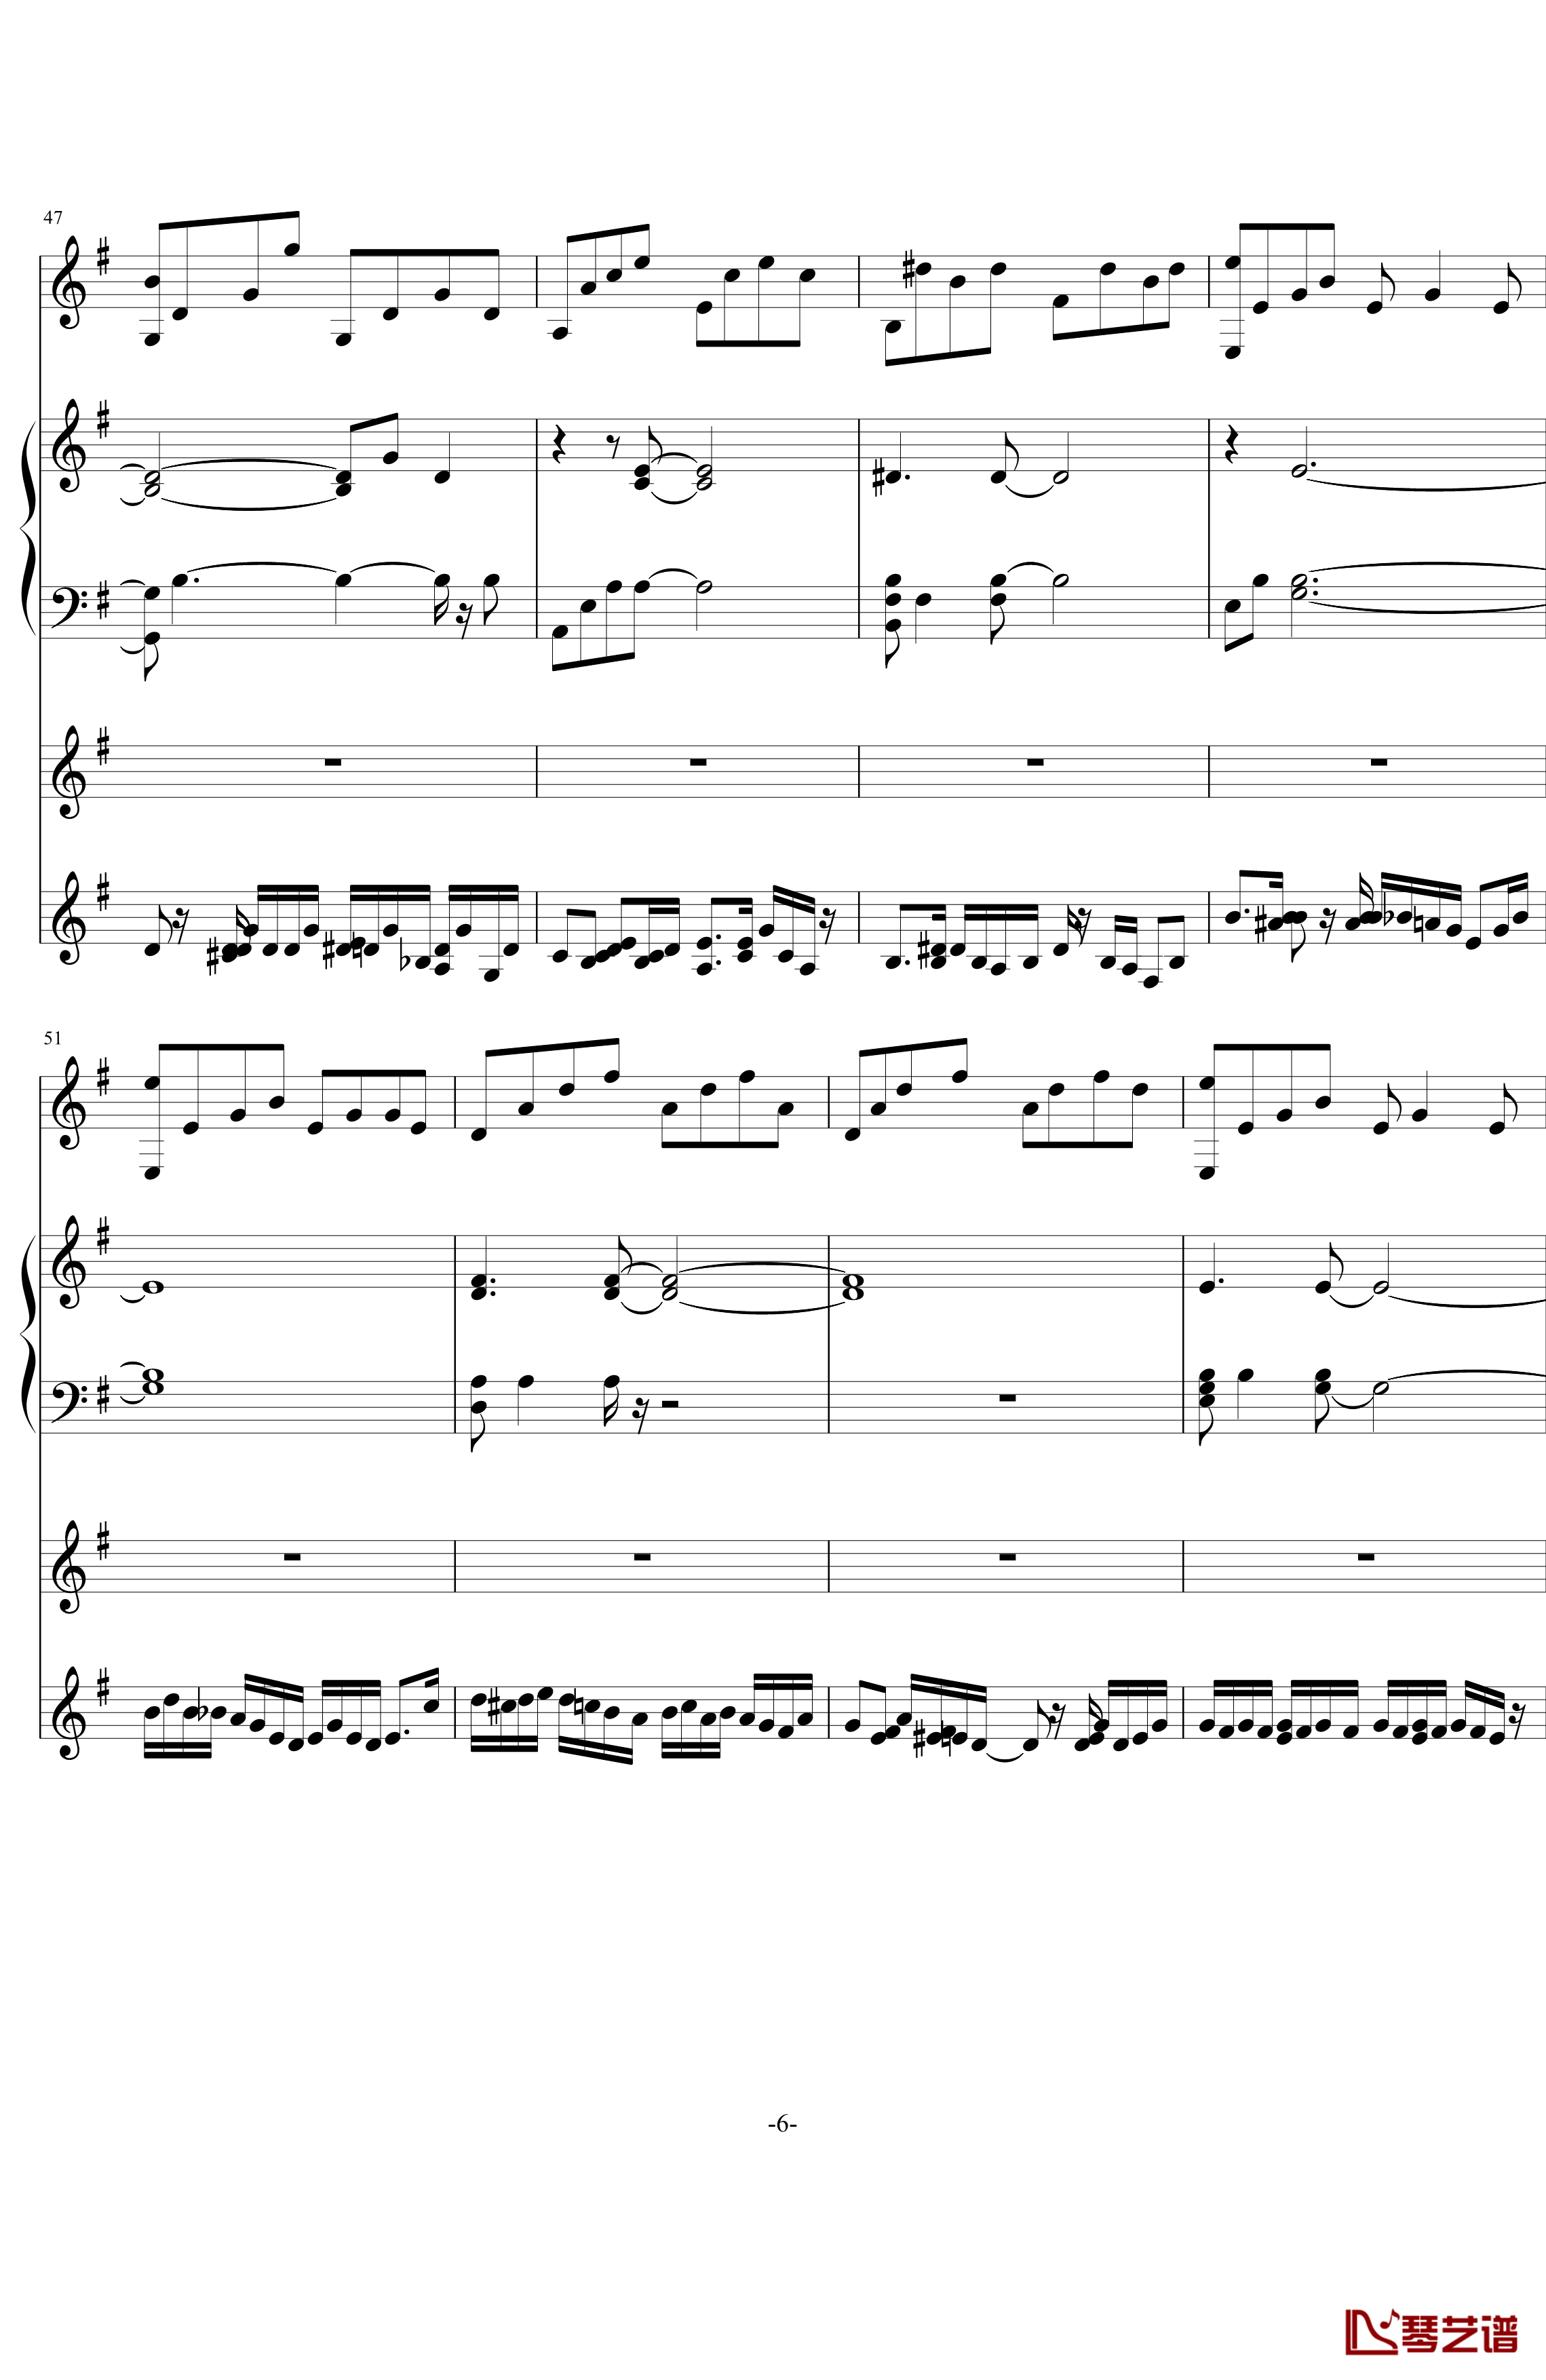 中提琴协奏版钢琴谱-含有钢琴独奏-老奠6